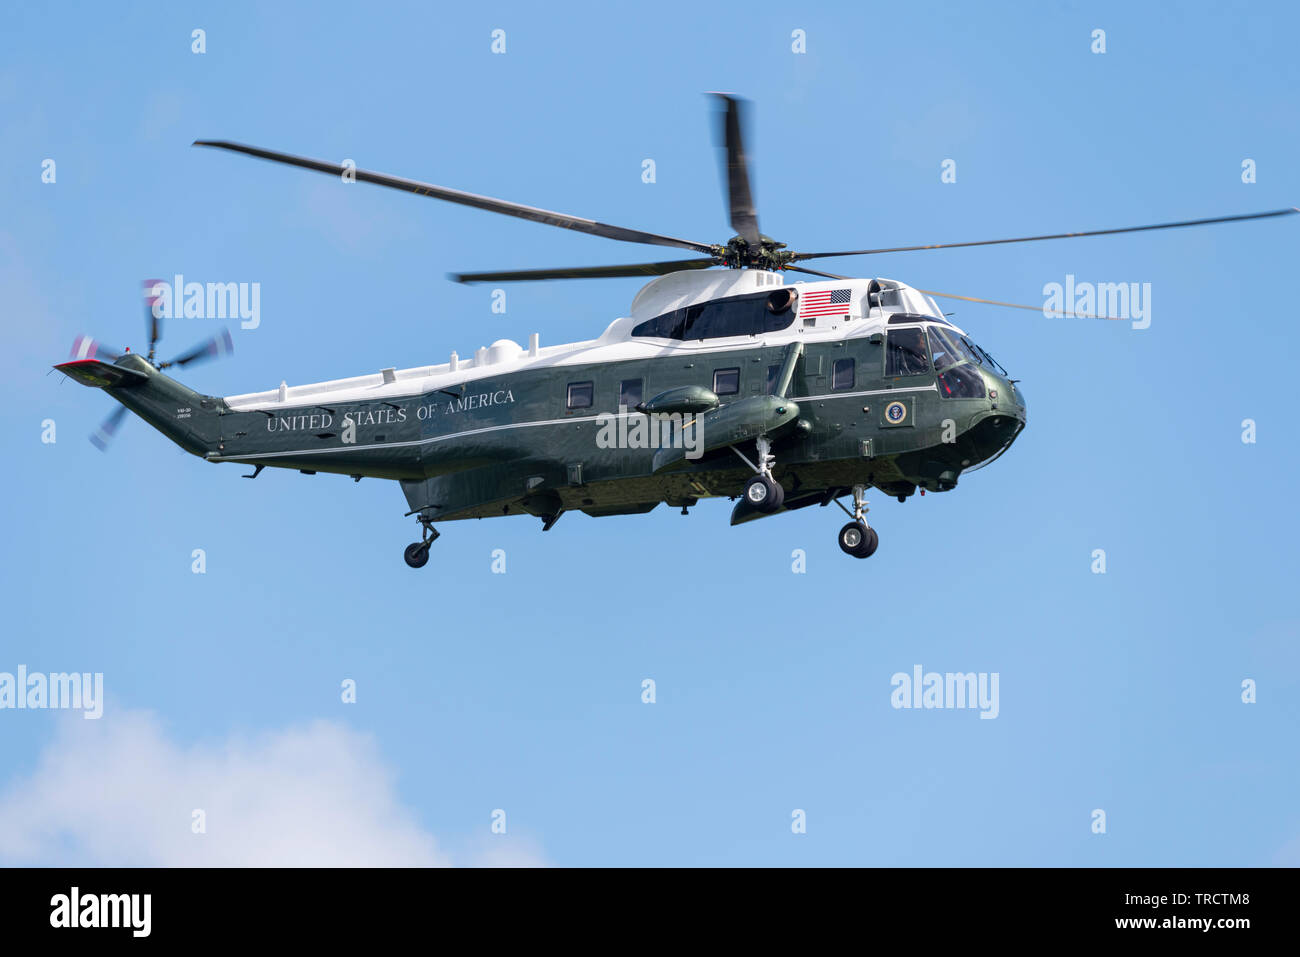 US Sikorsky VH-3D'un marine Sea King, un hélicoptère de transport dans le cadre de l'appui pour le Président Donald Trump Visite d'État au Royaume-Uni Banque D'Images